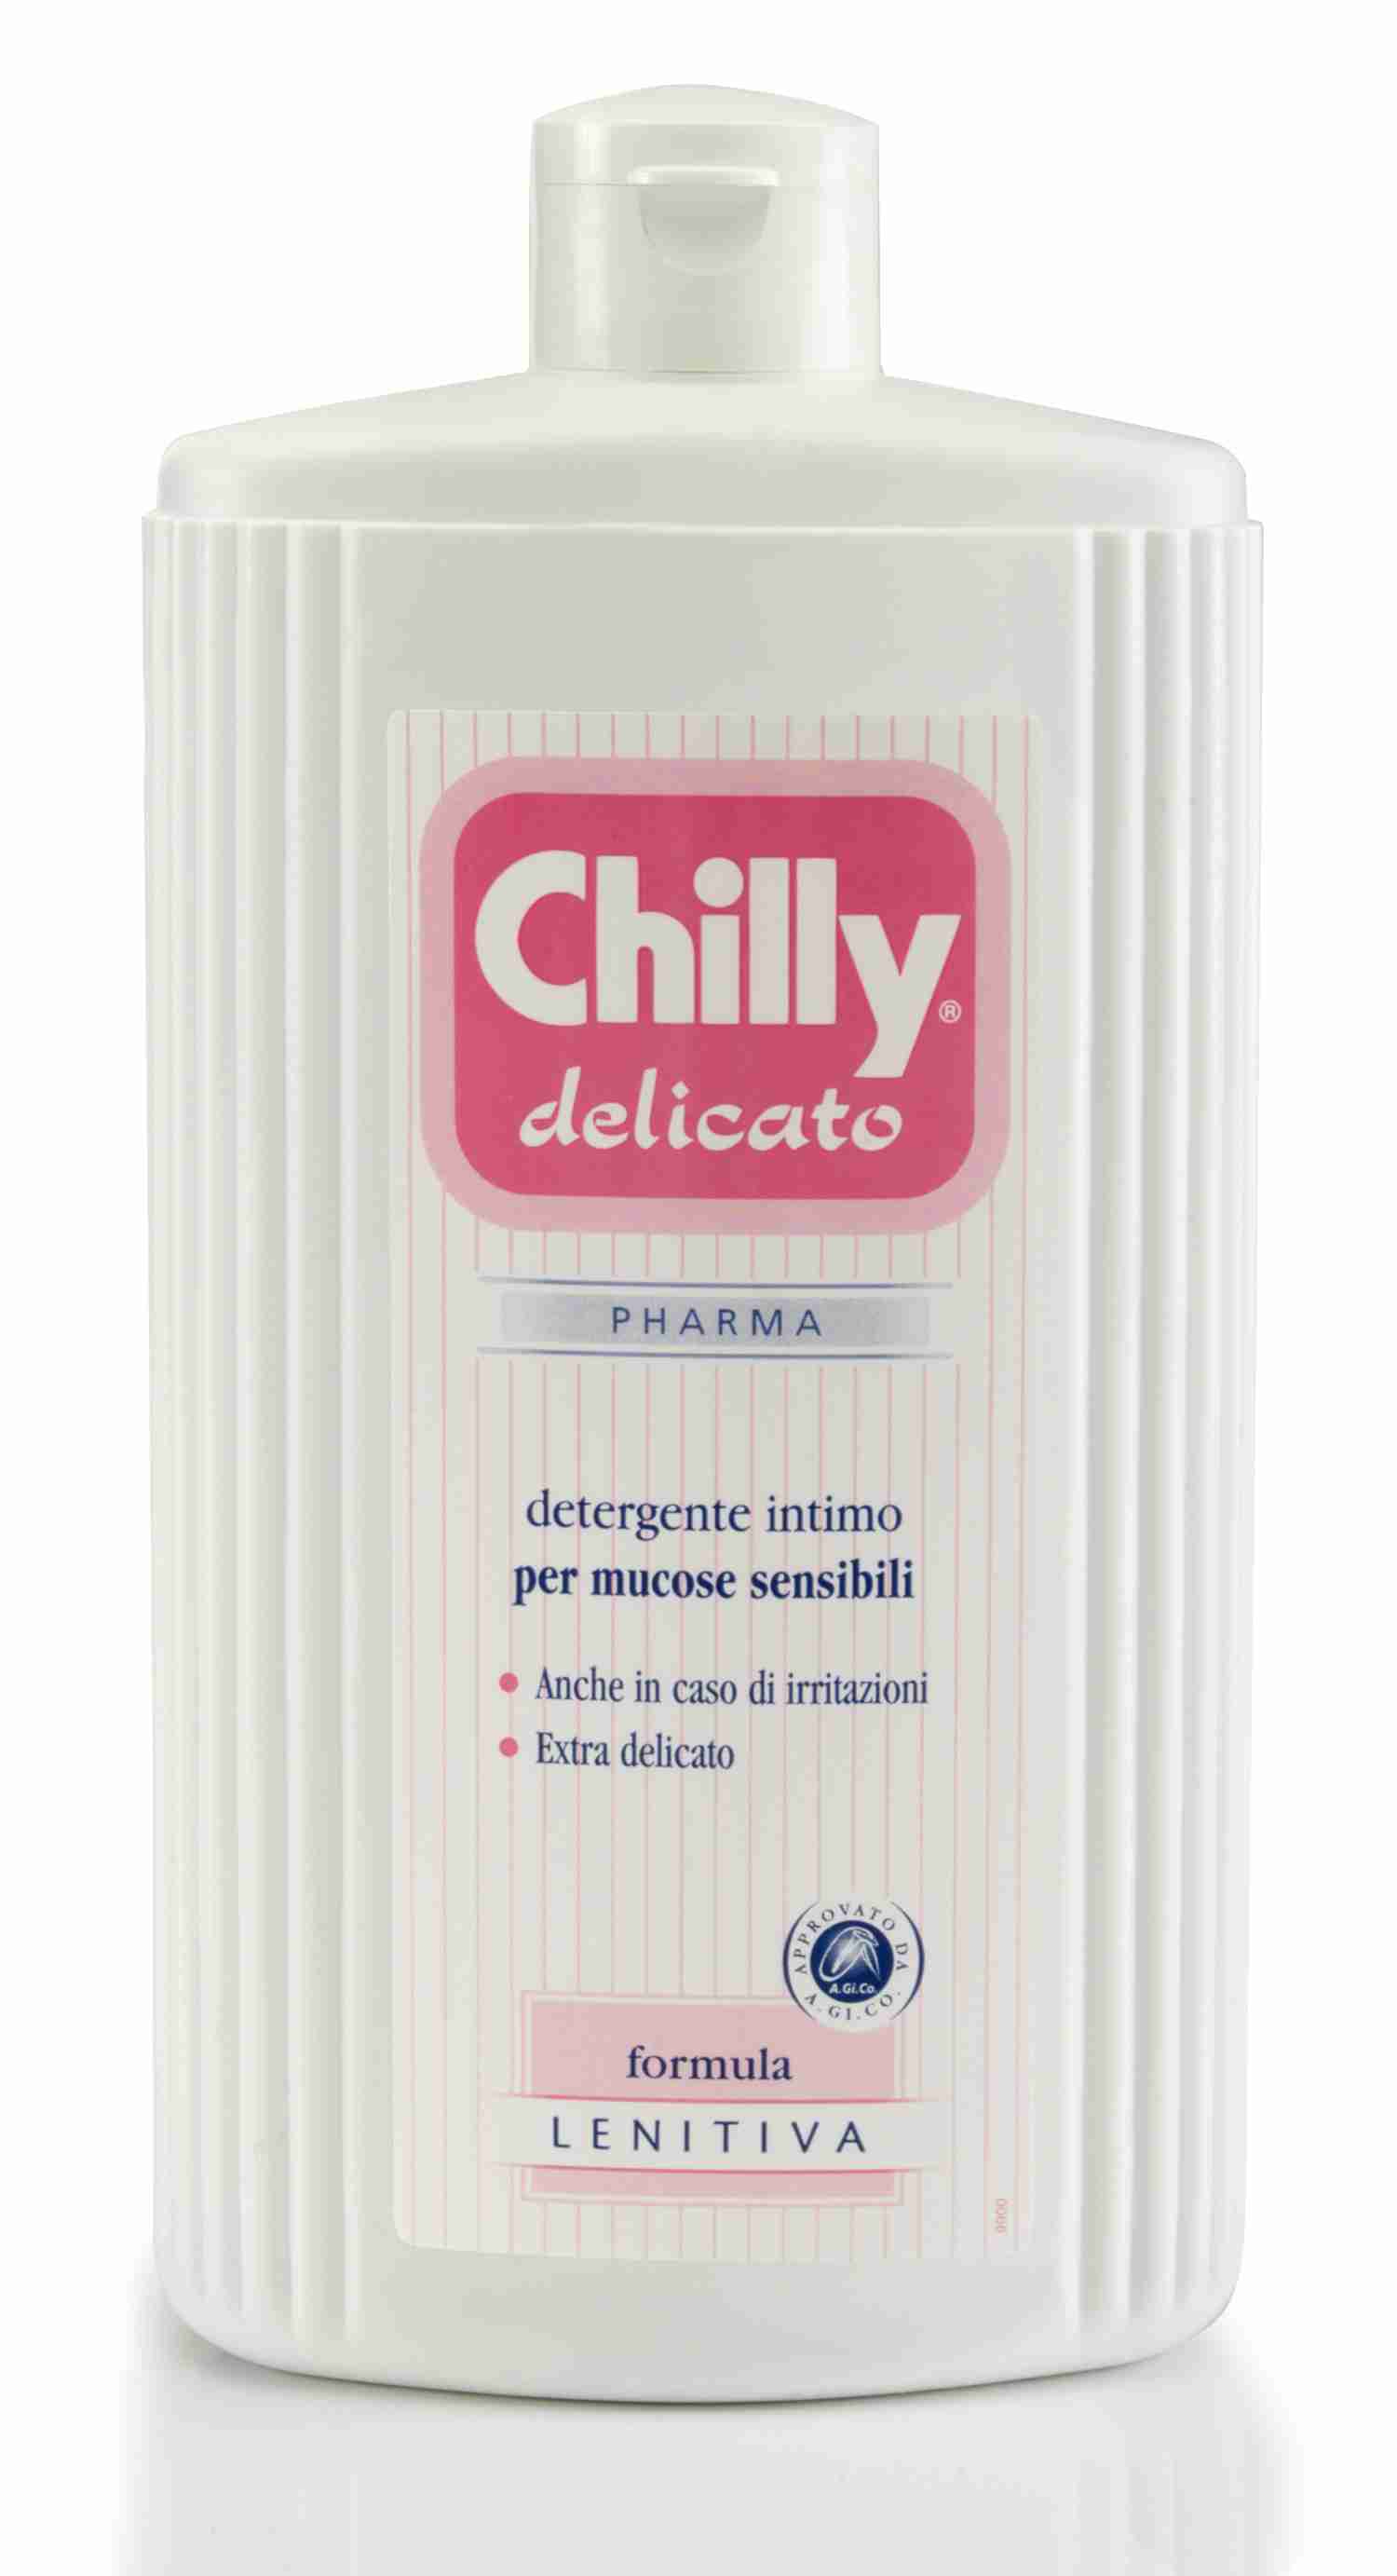 Detergente Intimo Formula Sensitive Chilly Delicato 500ml